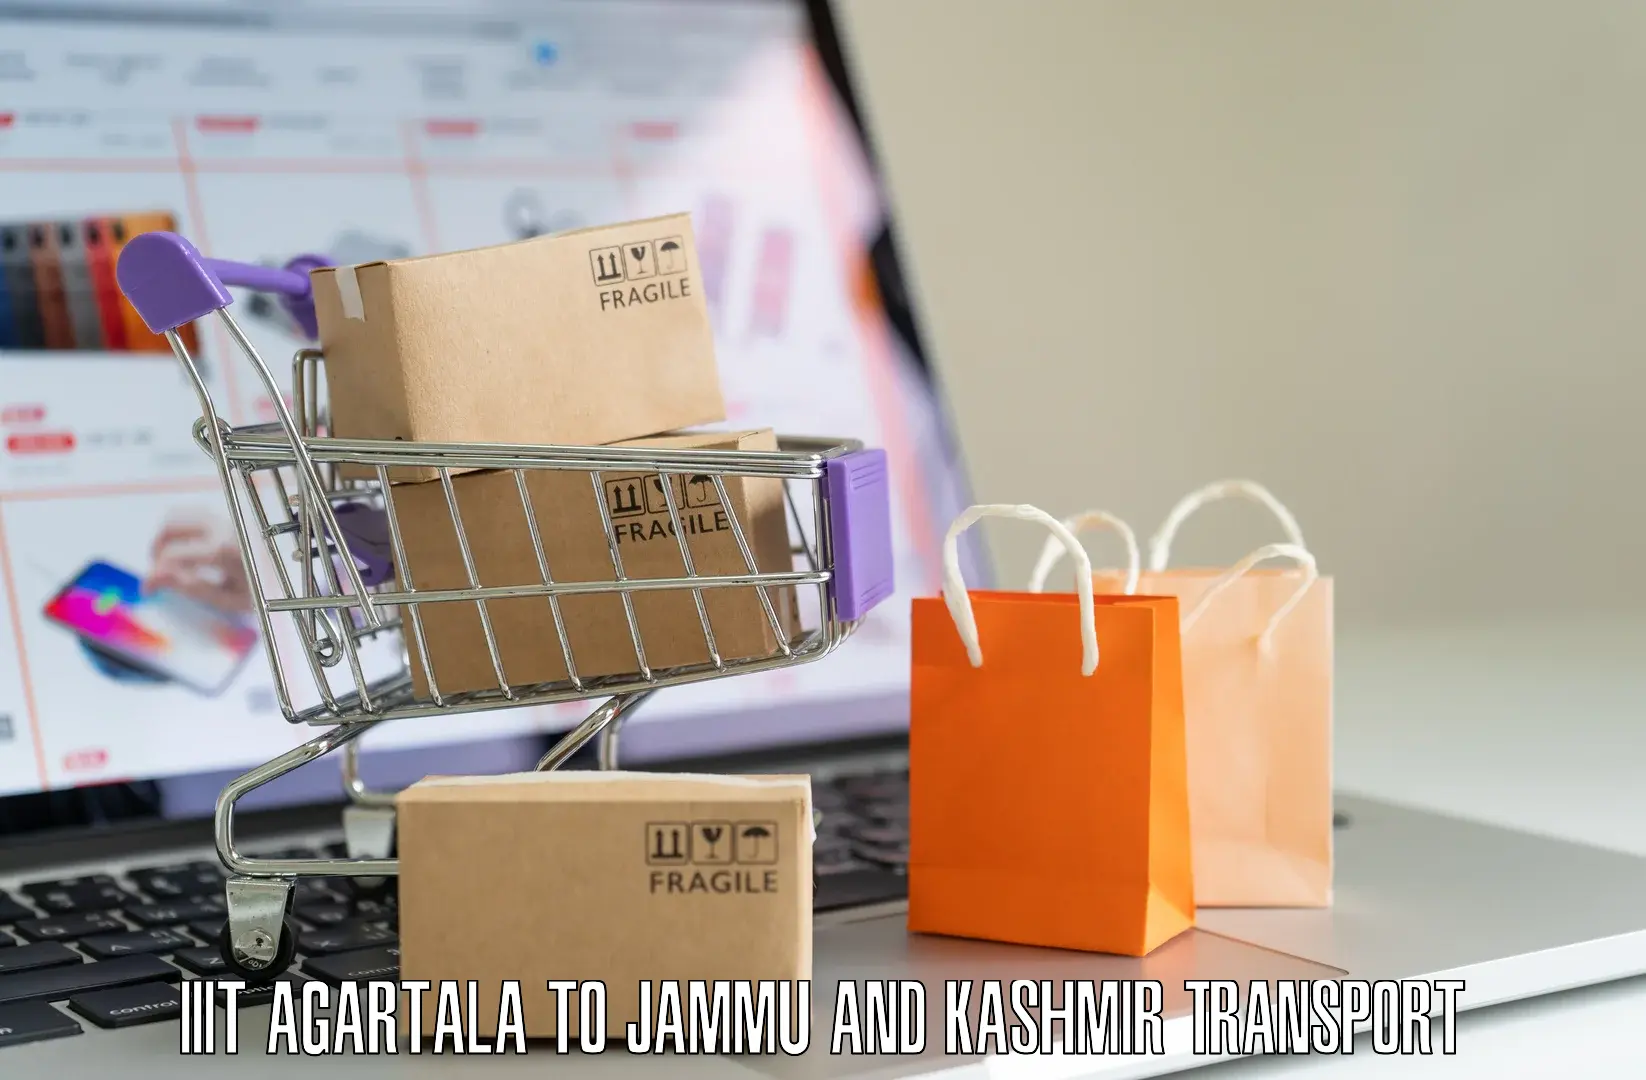 Parcel transport services IIIT Agartala to IIT Jammu